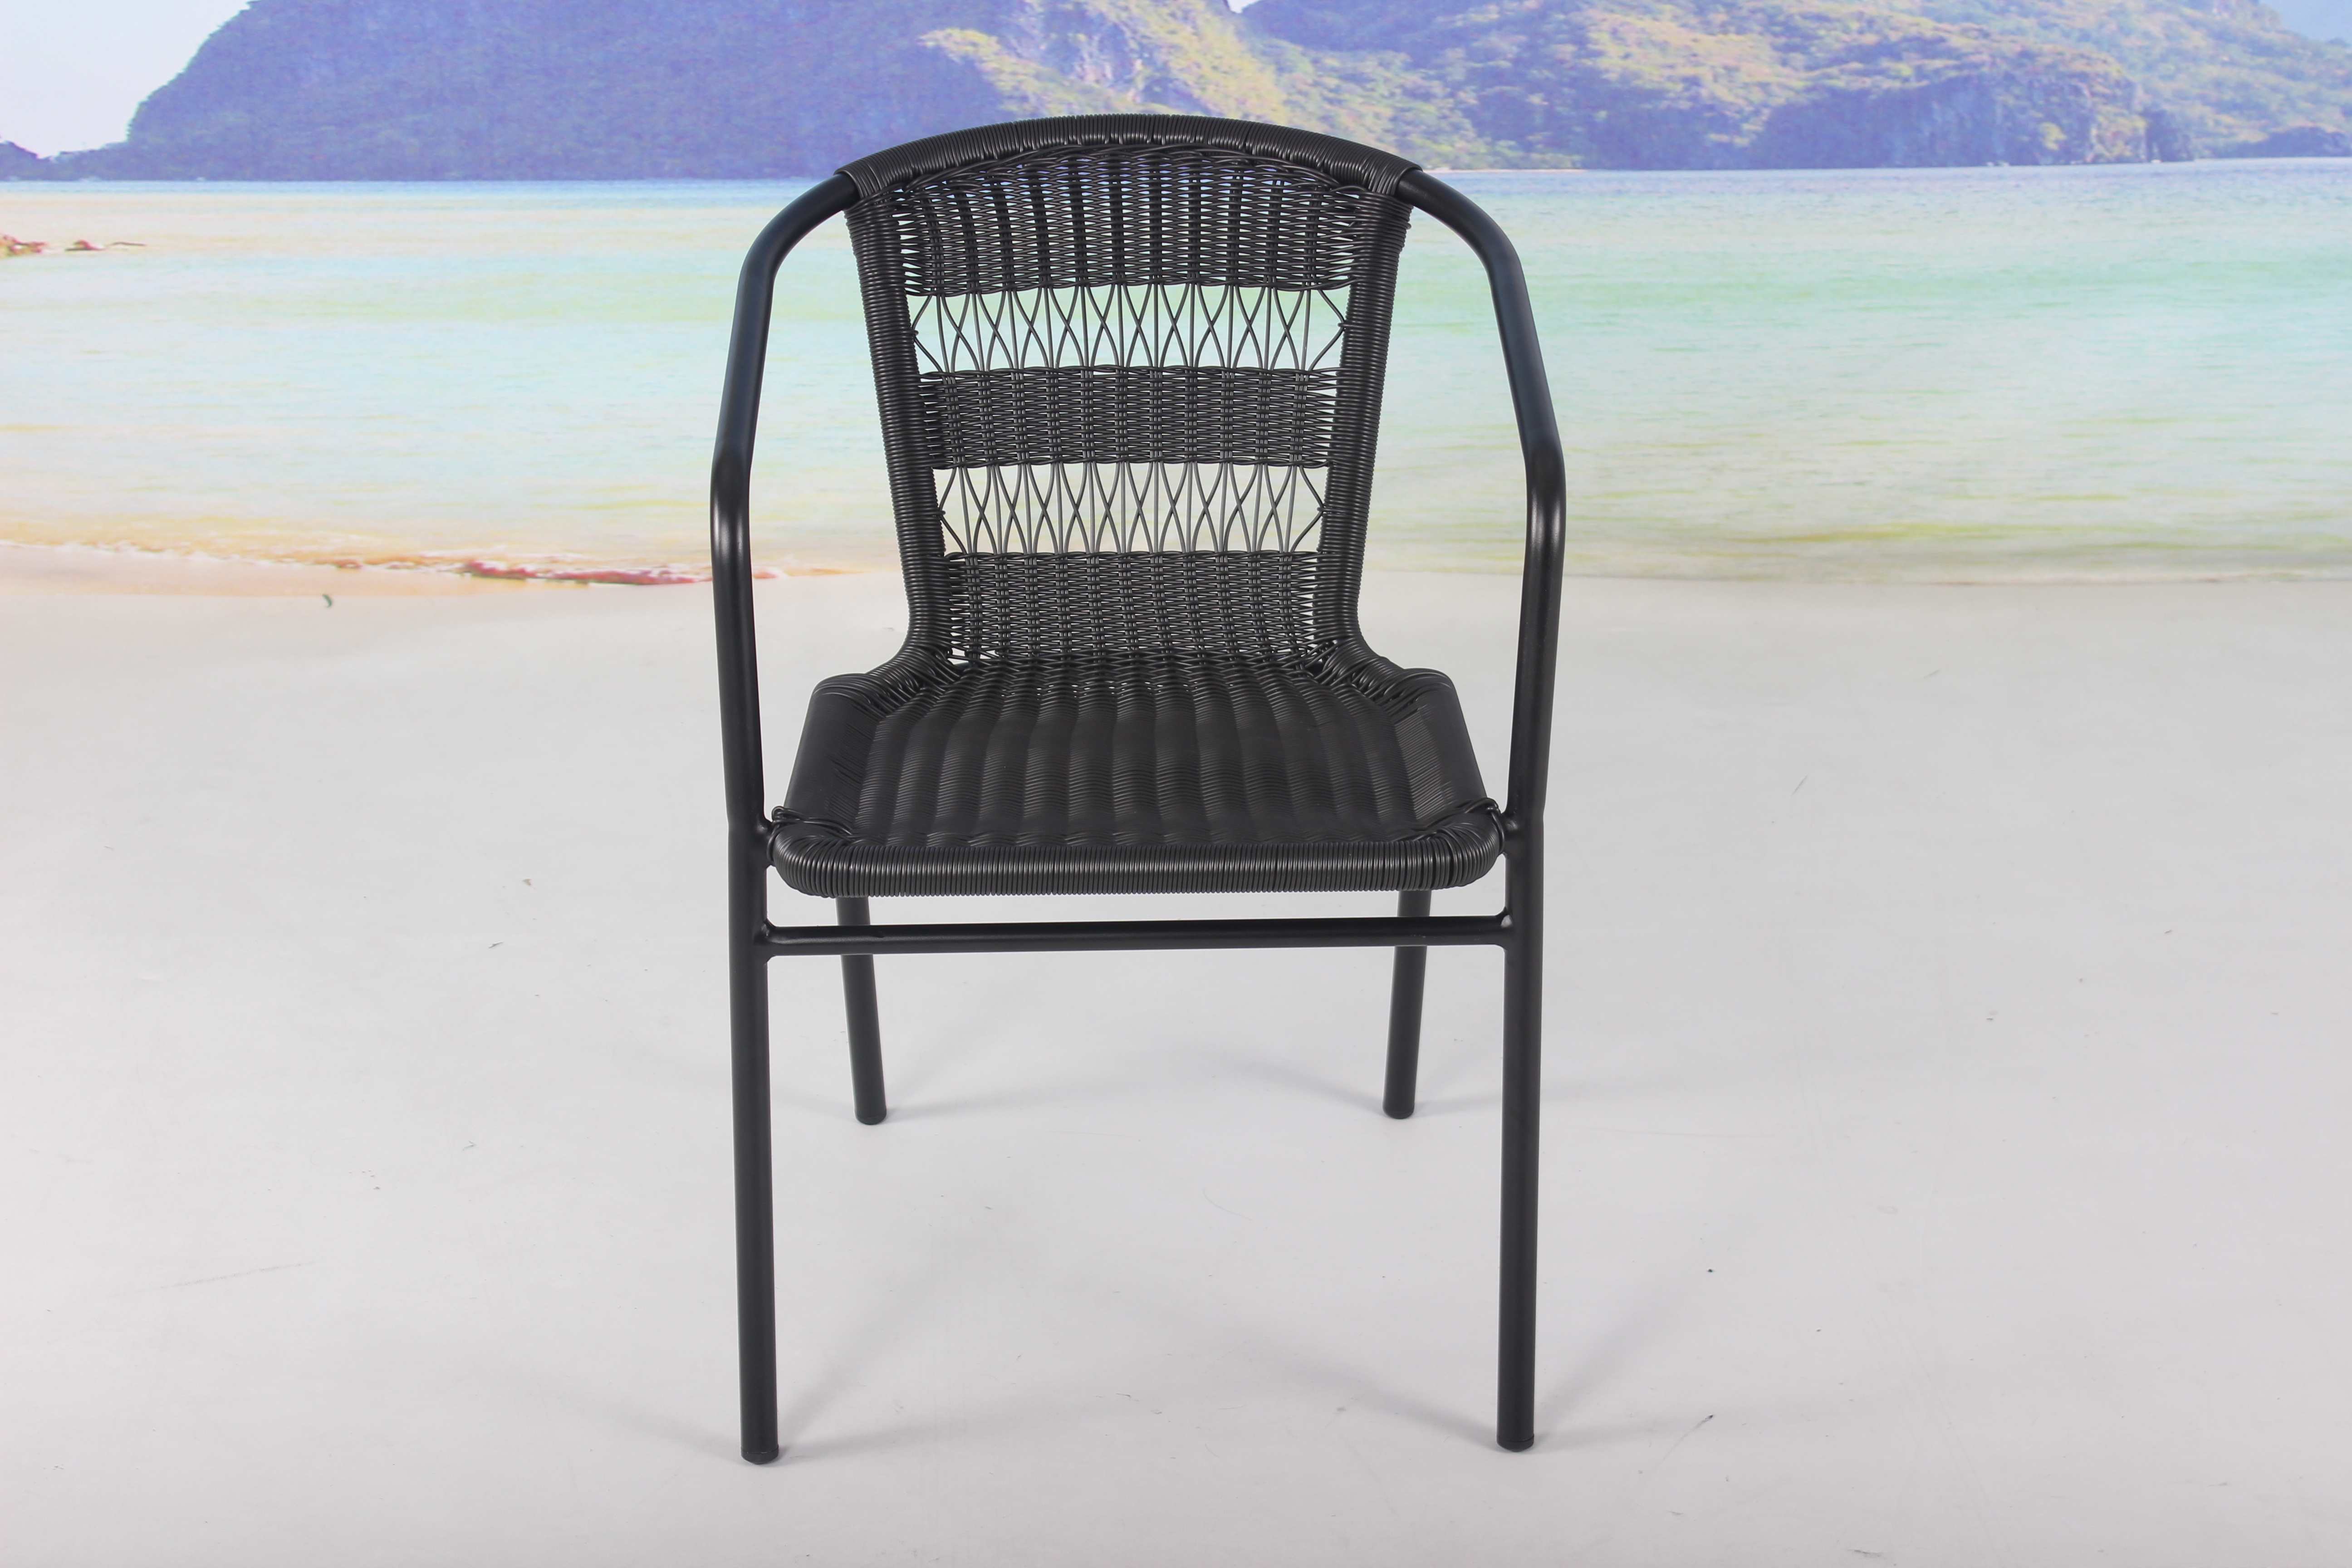 3 piece outdoor bistro wicker chair set